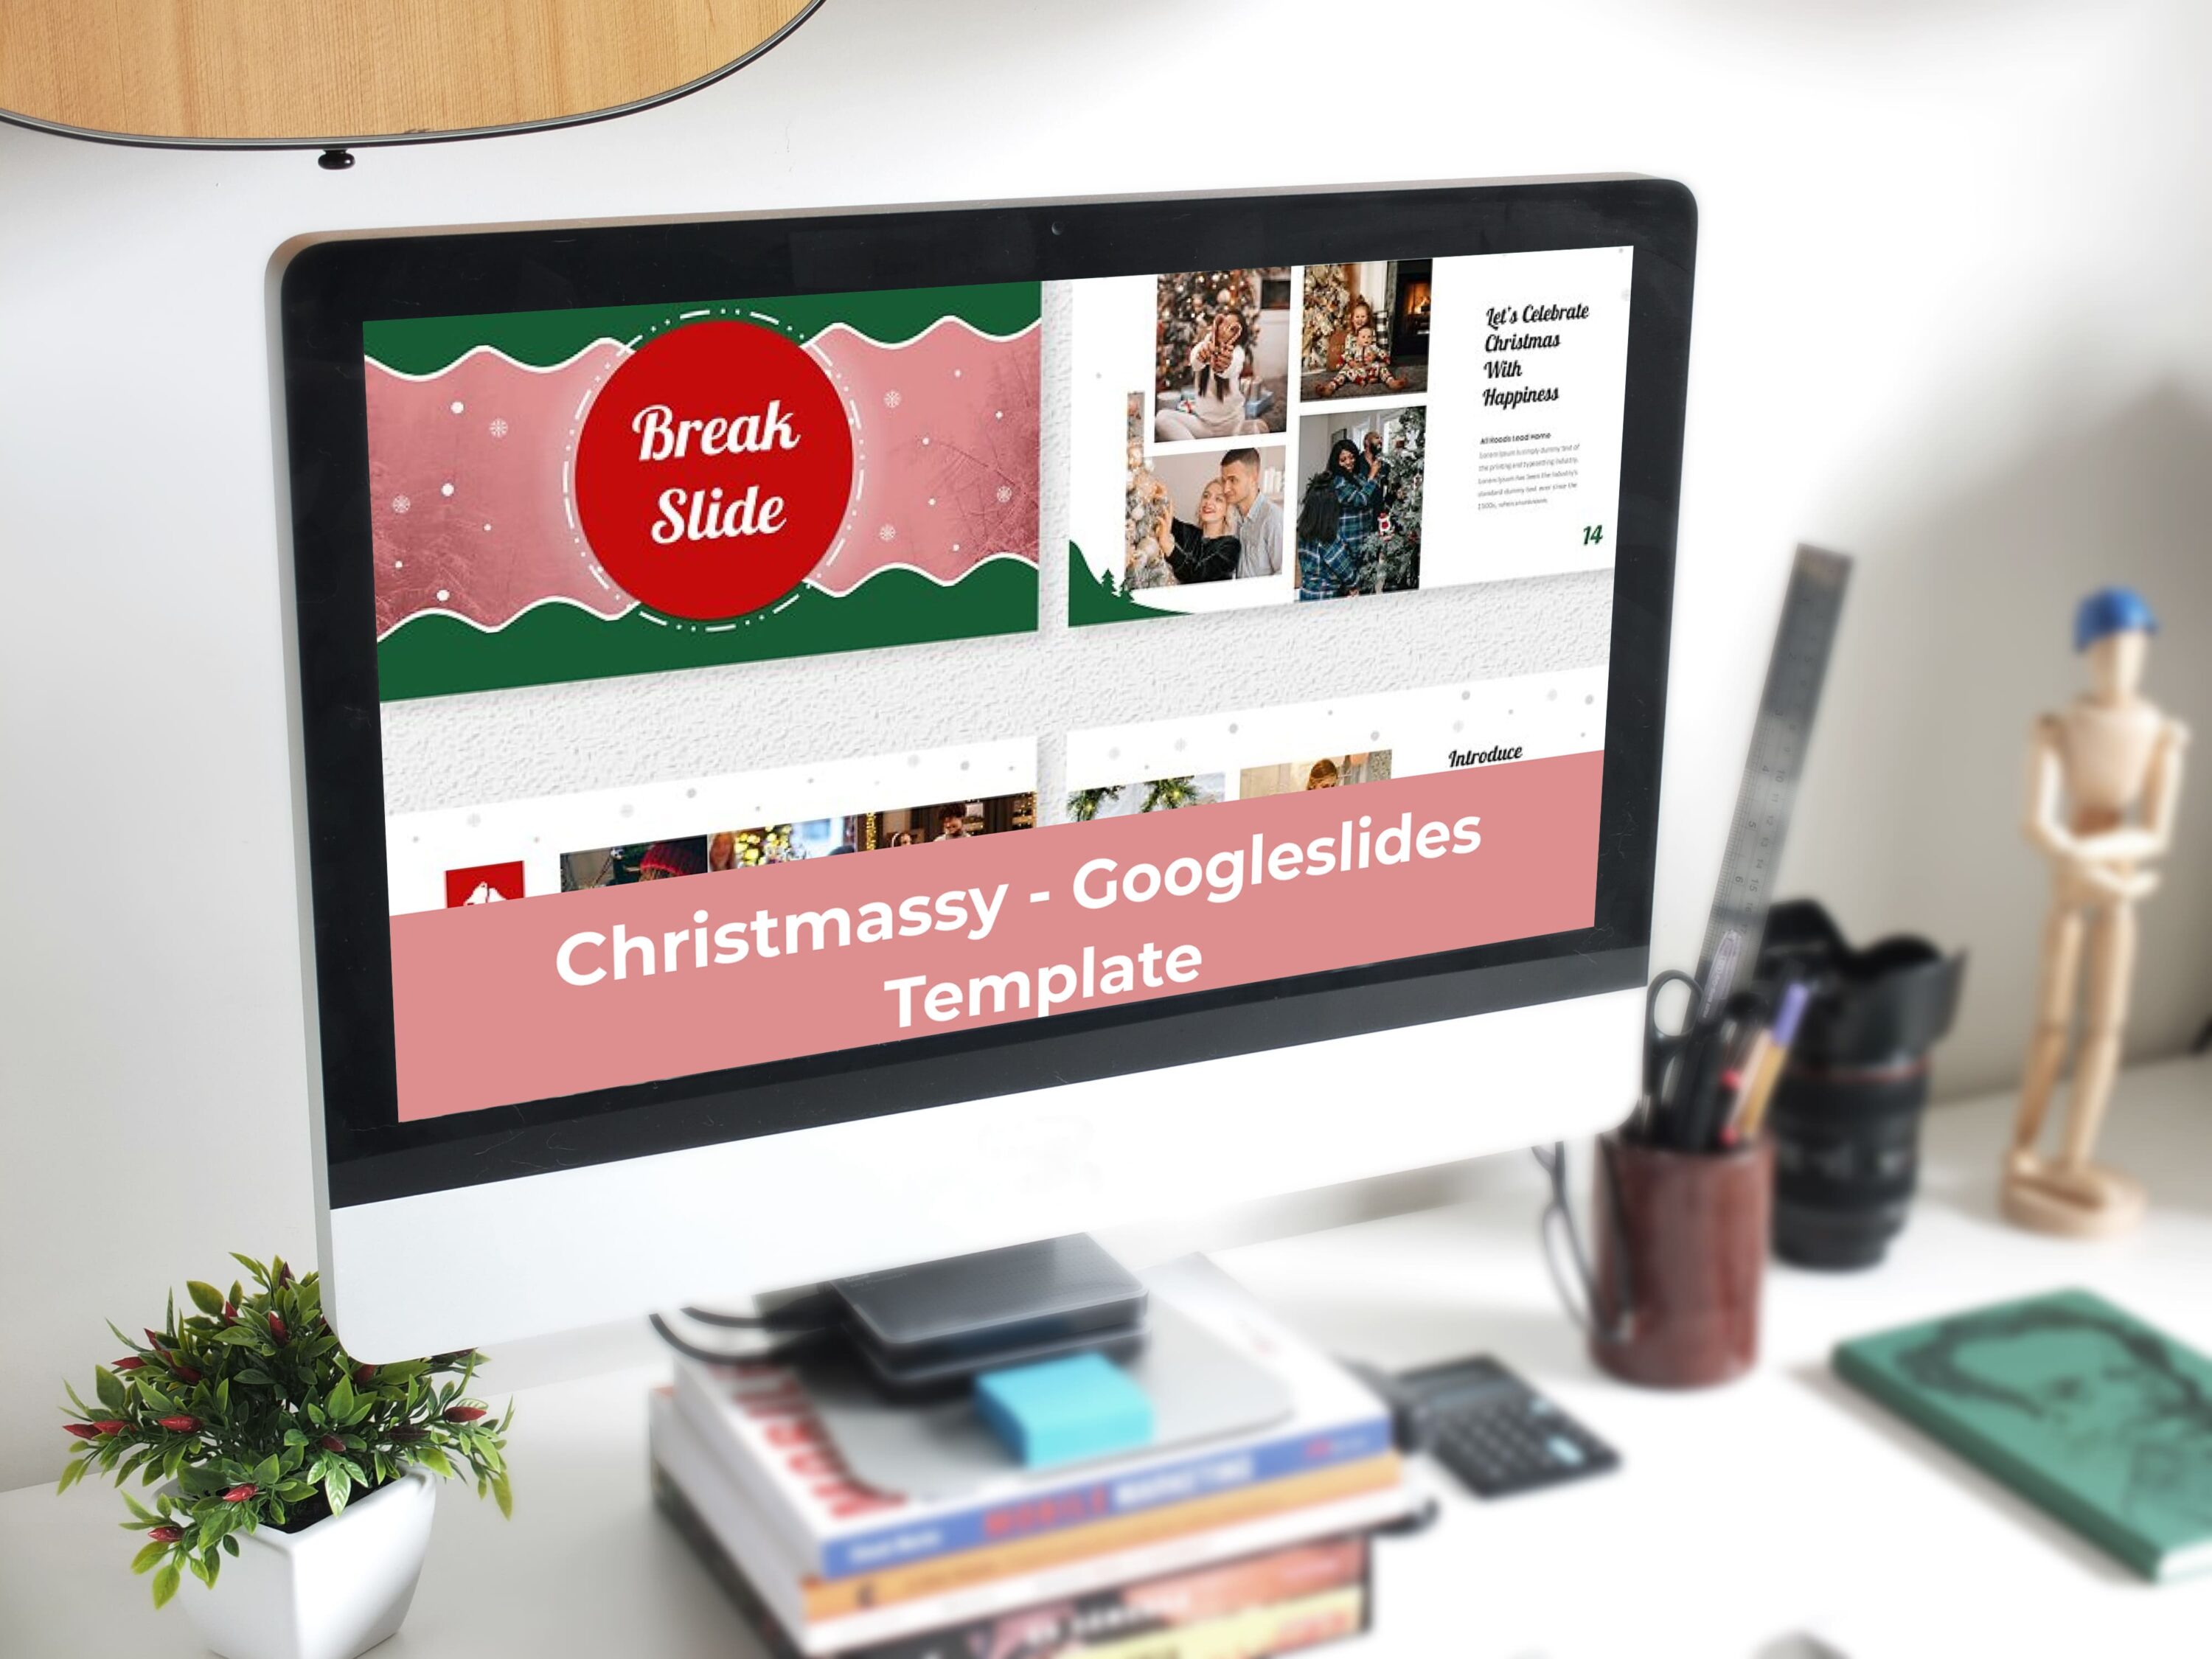 Christmassy - Googleslides Template - Mockup on Desktop.